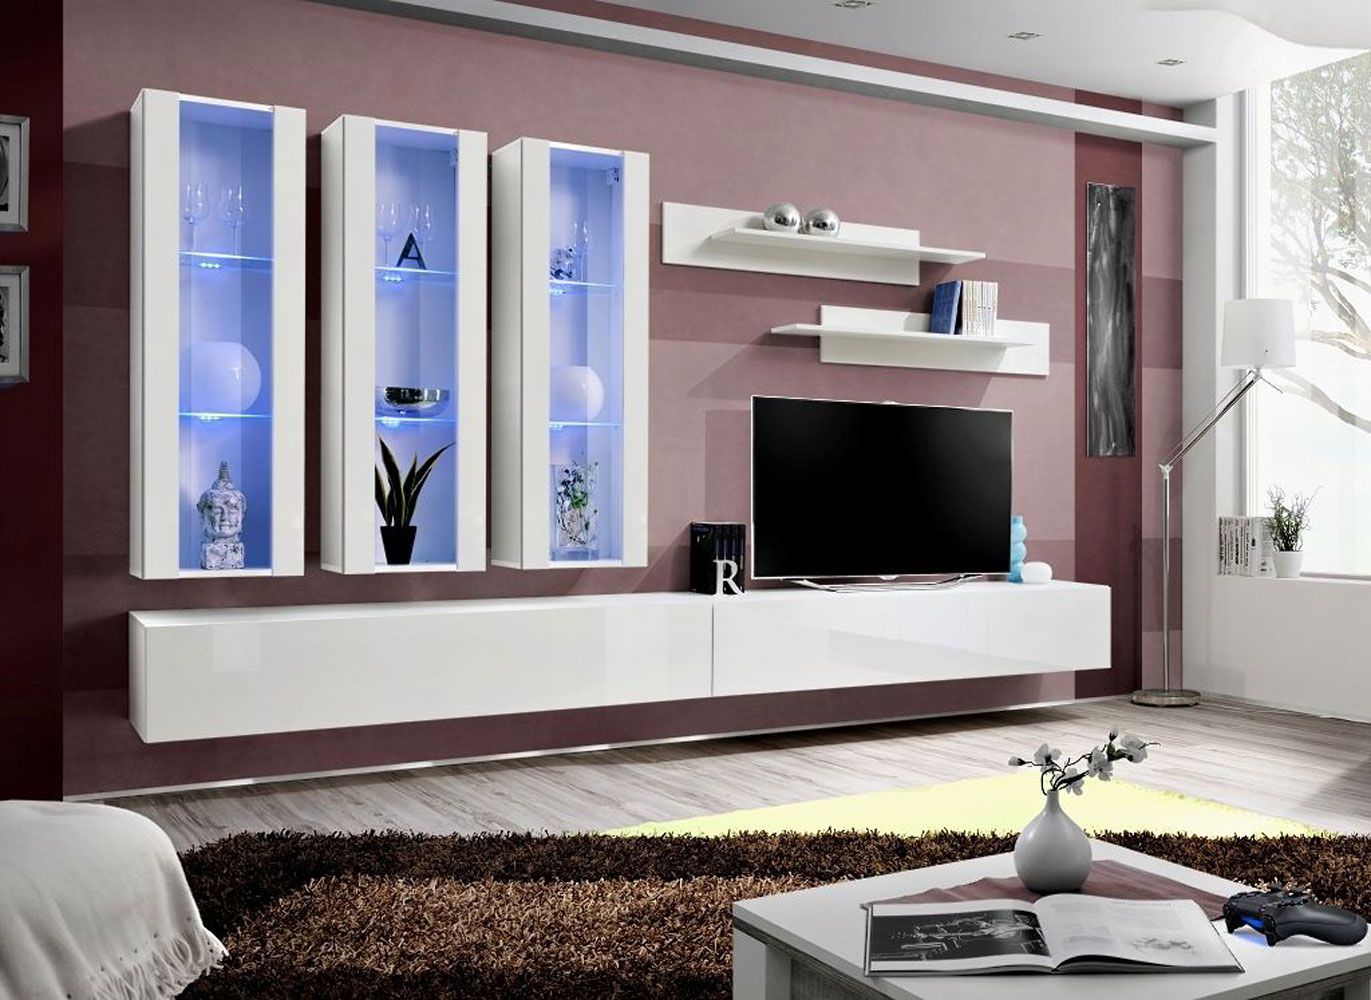 Hangende woonkamerwand Hompland 50, kleur: wit - Afmetingen: 170 x 320 x 40 cm (H x B x D), met voldoende opbergruimte